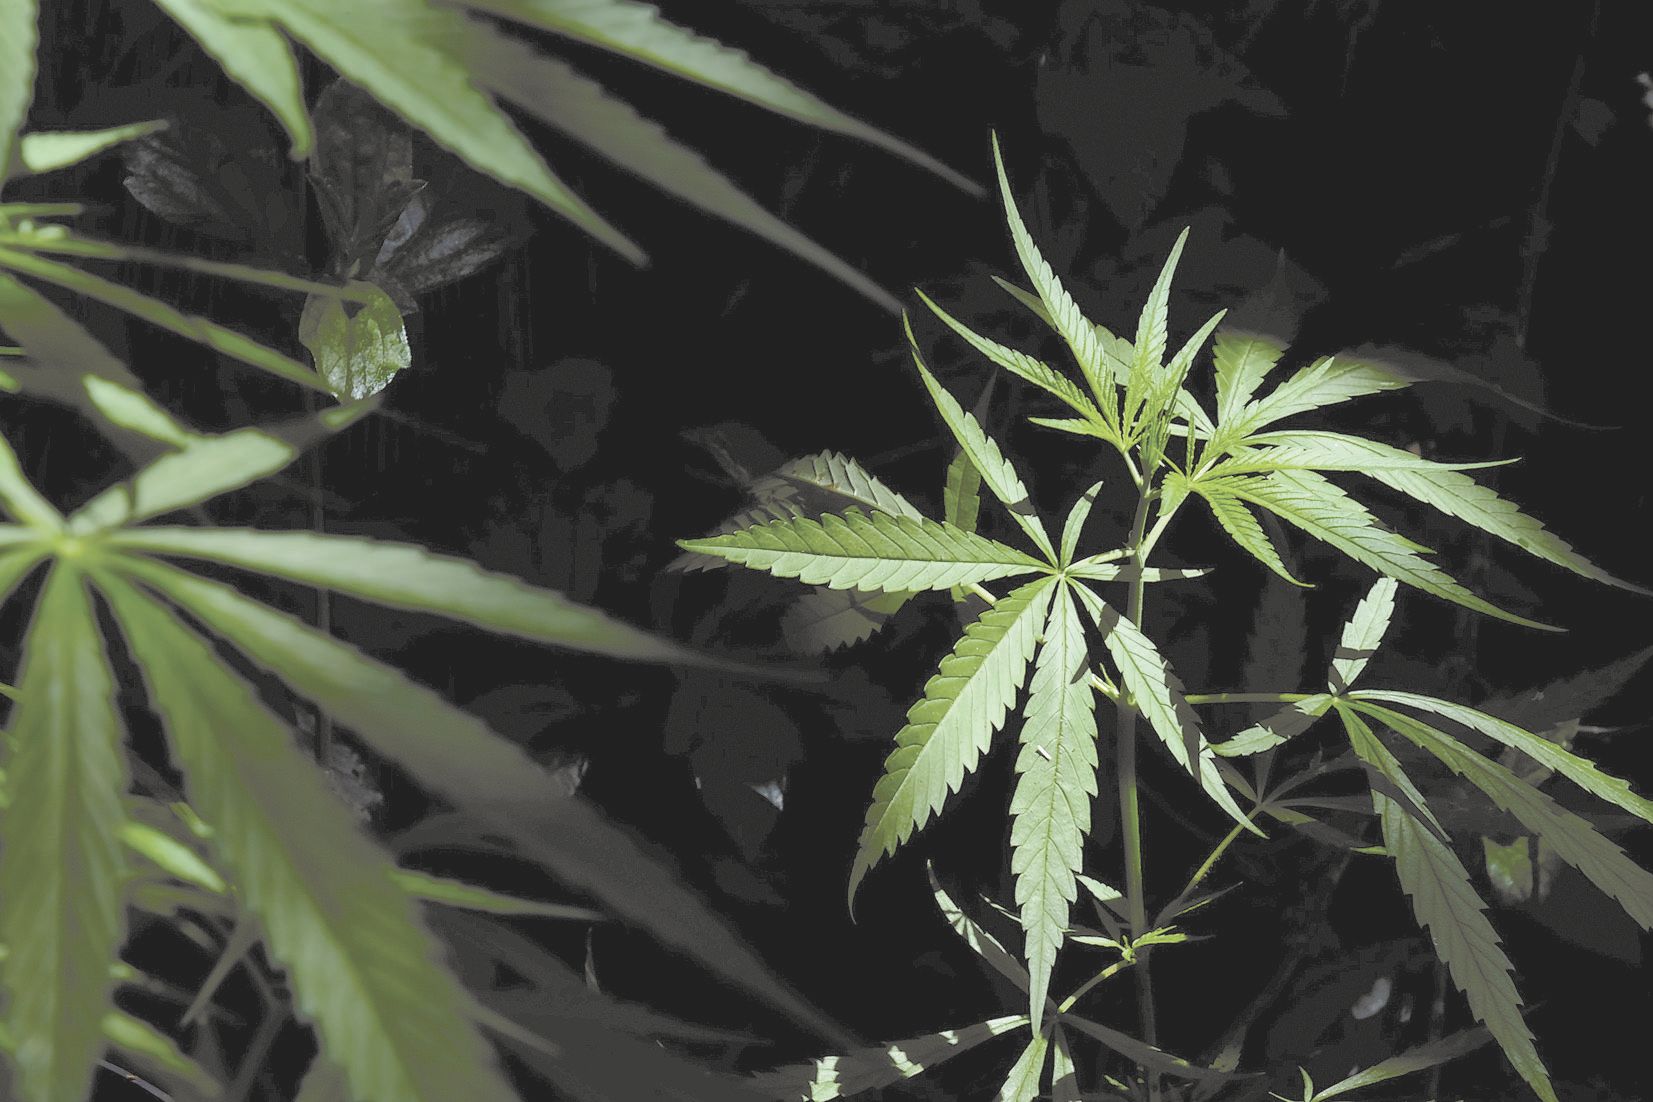 Lors de la perquisition chez le cannabiculteur, à Houaïlou, 300 grammes de cannabis, une vingtaine de pieds et une cinquantaine de plantules ont été retrouvés.